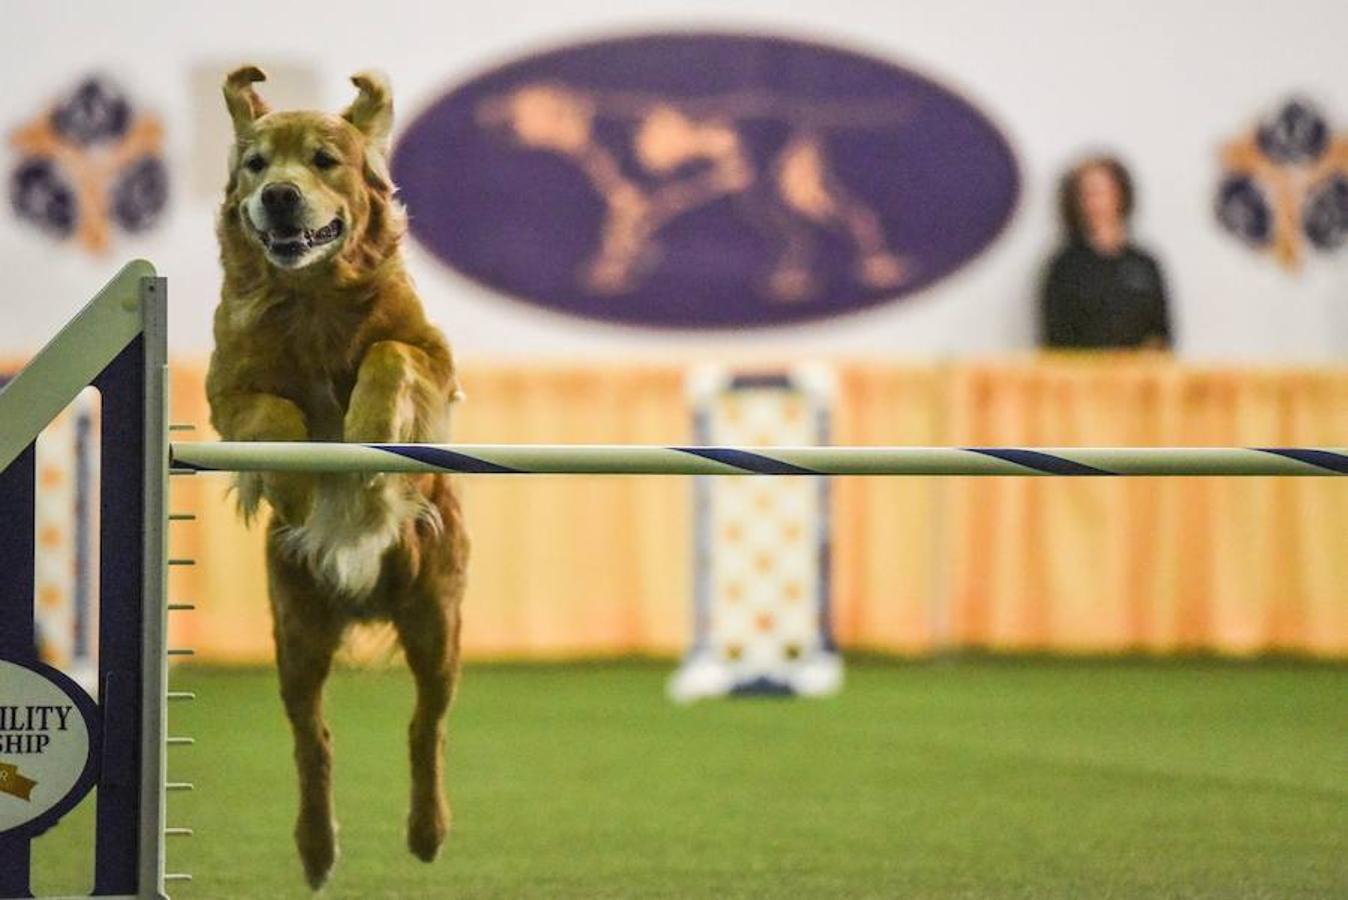 El Bichón Frise Flynn de cinco años ha sido nombrado como 'El mejor del espectáculo' en la 142 edición del 'Westminister Dog Show' en Nueva York. Han sido muchos los dueños que han llevado a sus perros para que participen en este popular certamen.